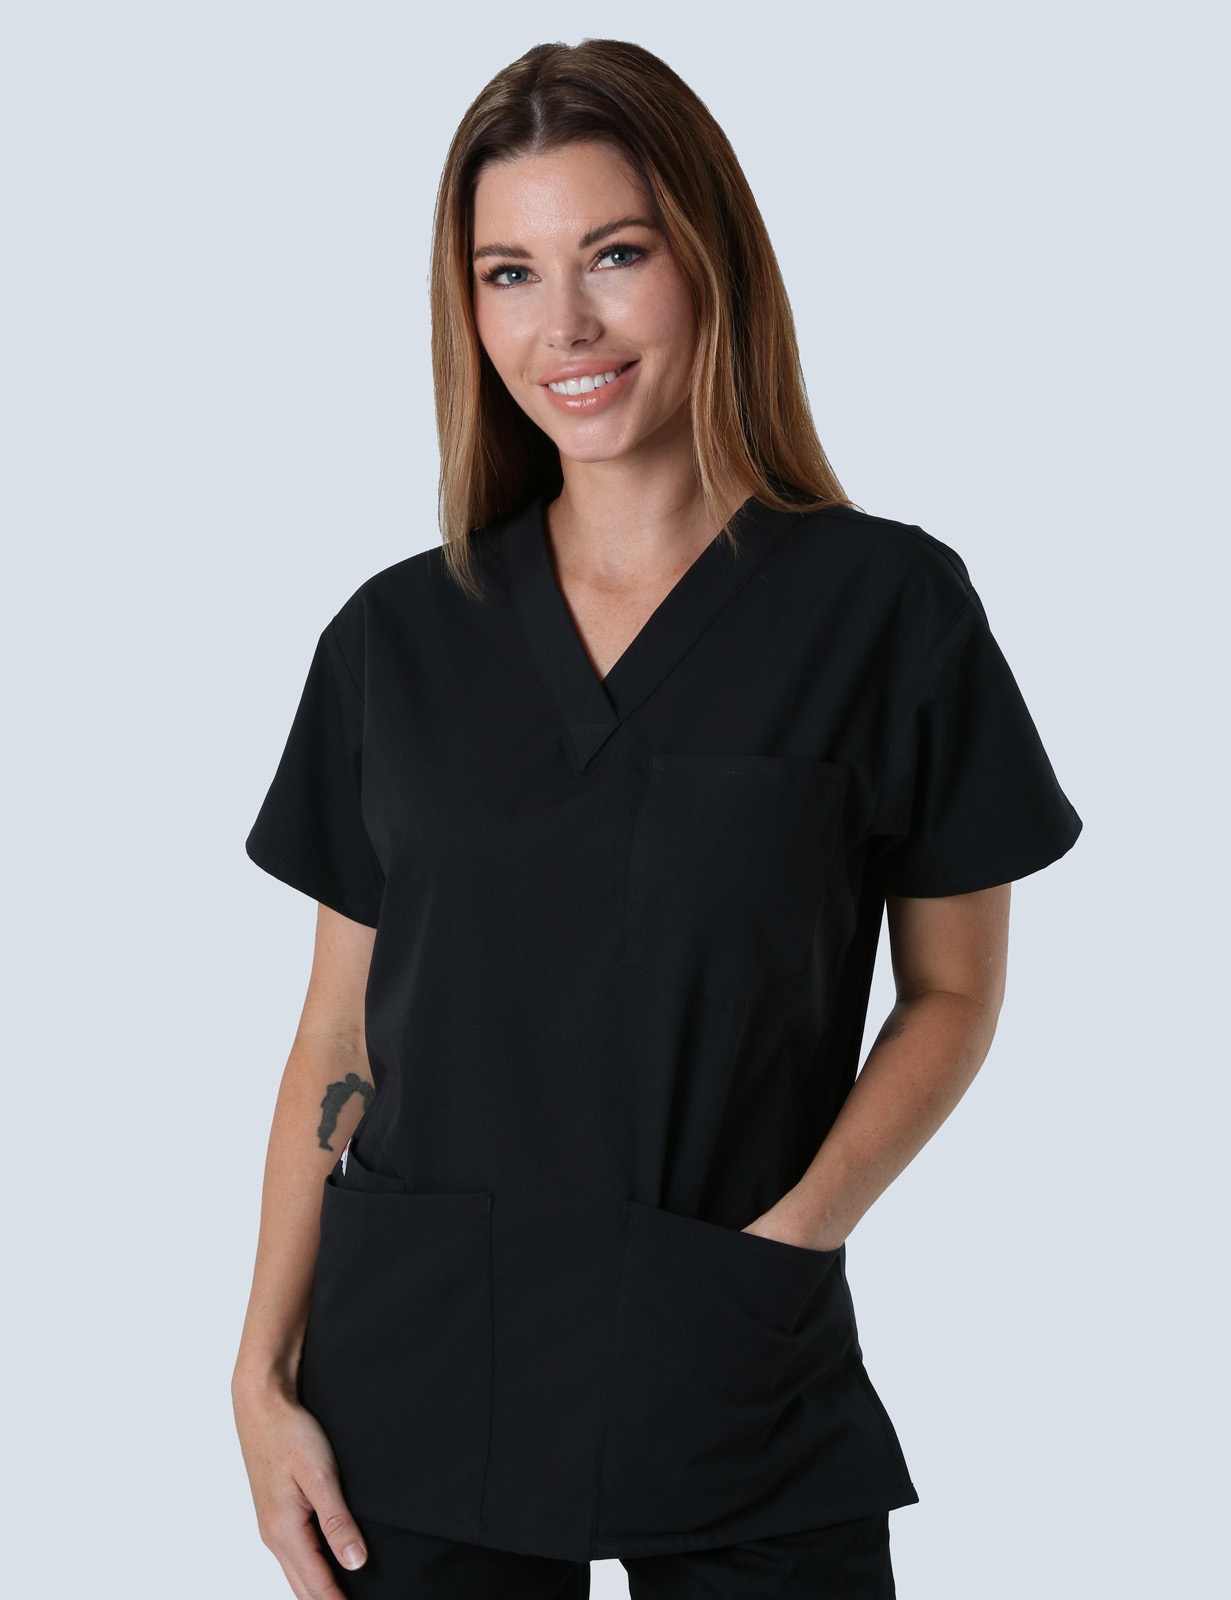 Queensland Children's Hospital Emergency Department Senior Medical Officer Uniform Top Bundle  (4 Pocket Top in Black  incl Logos)